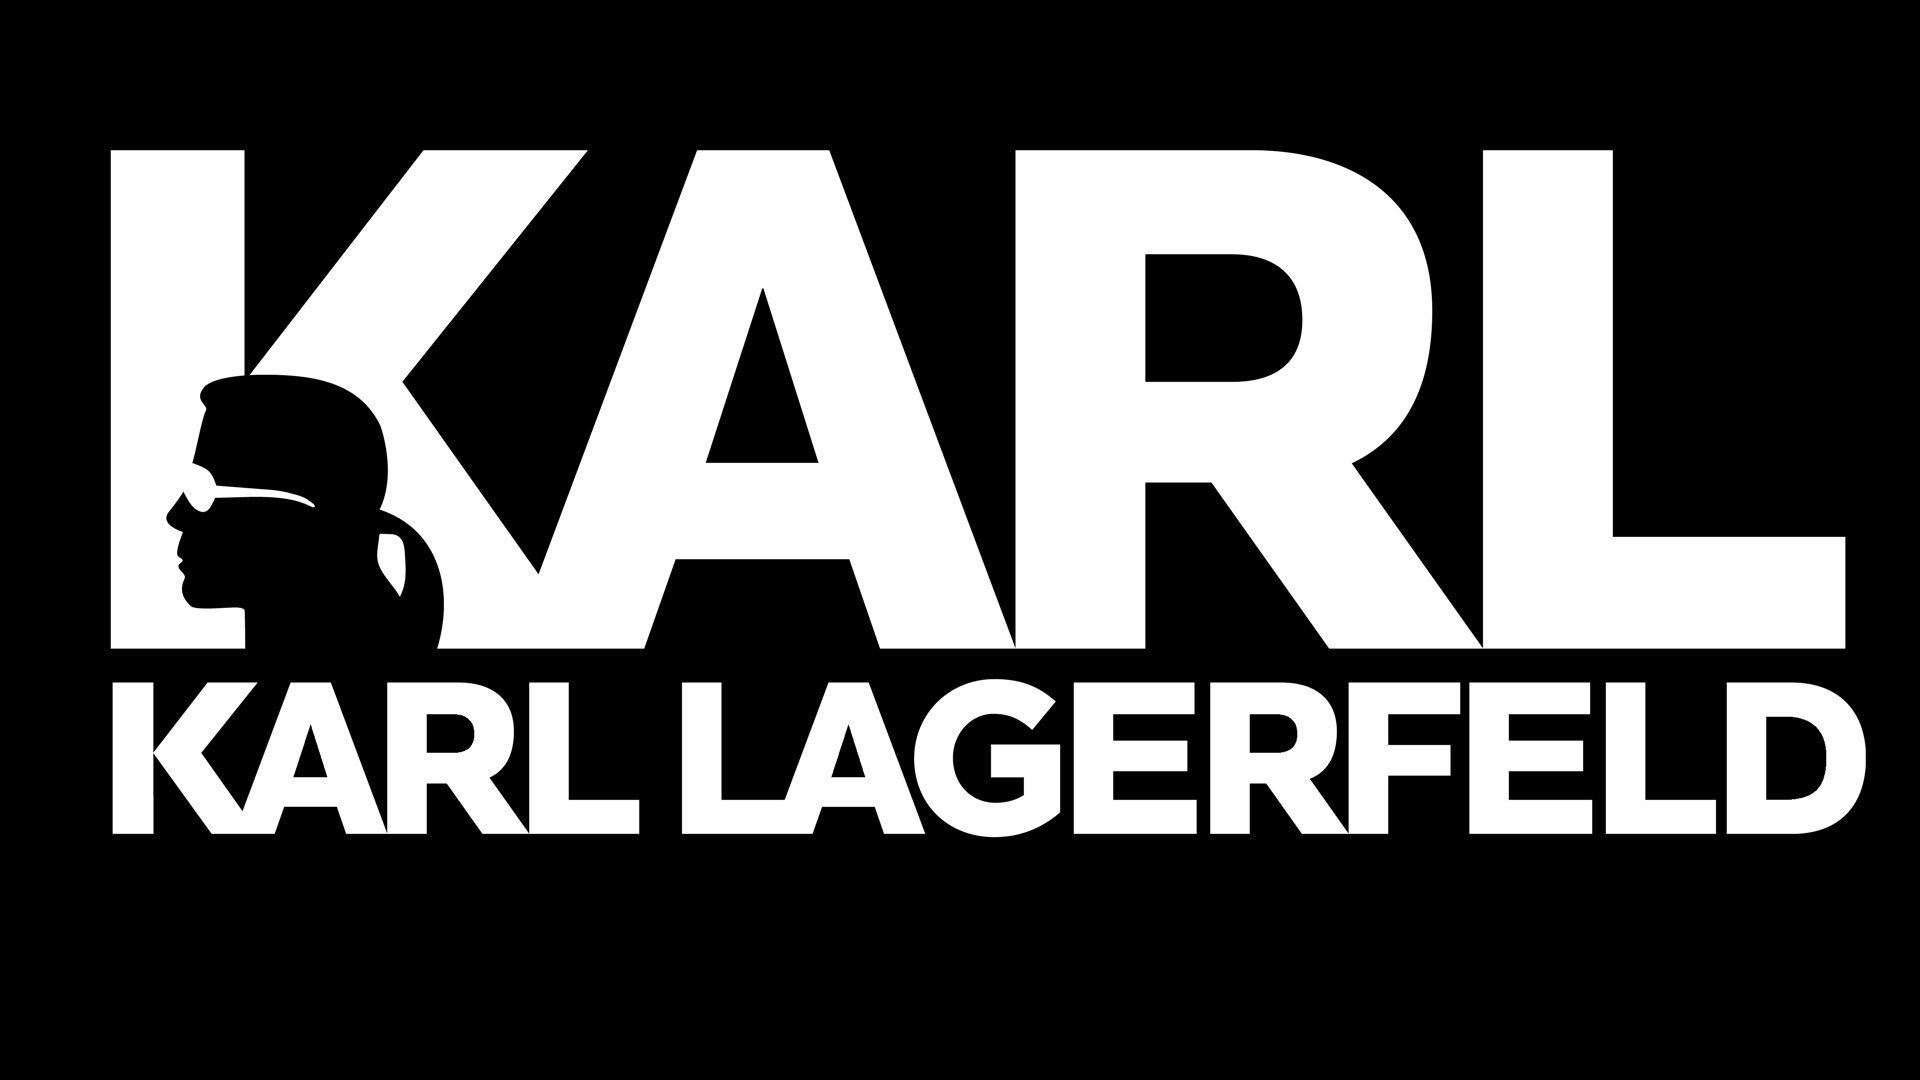 KARL LAGERFELD. Karl Lagerfeld Montreal